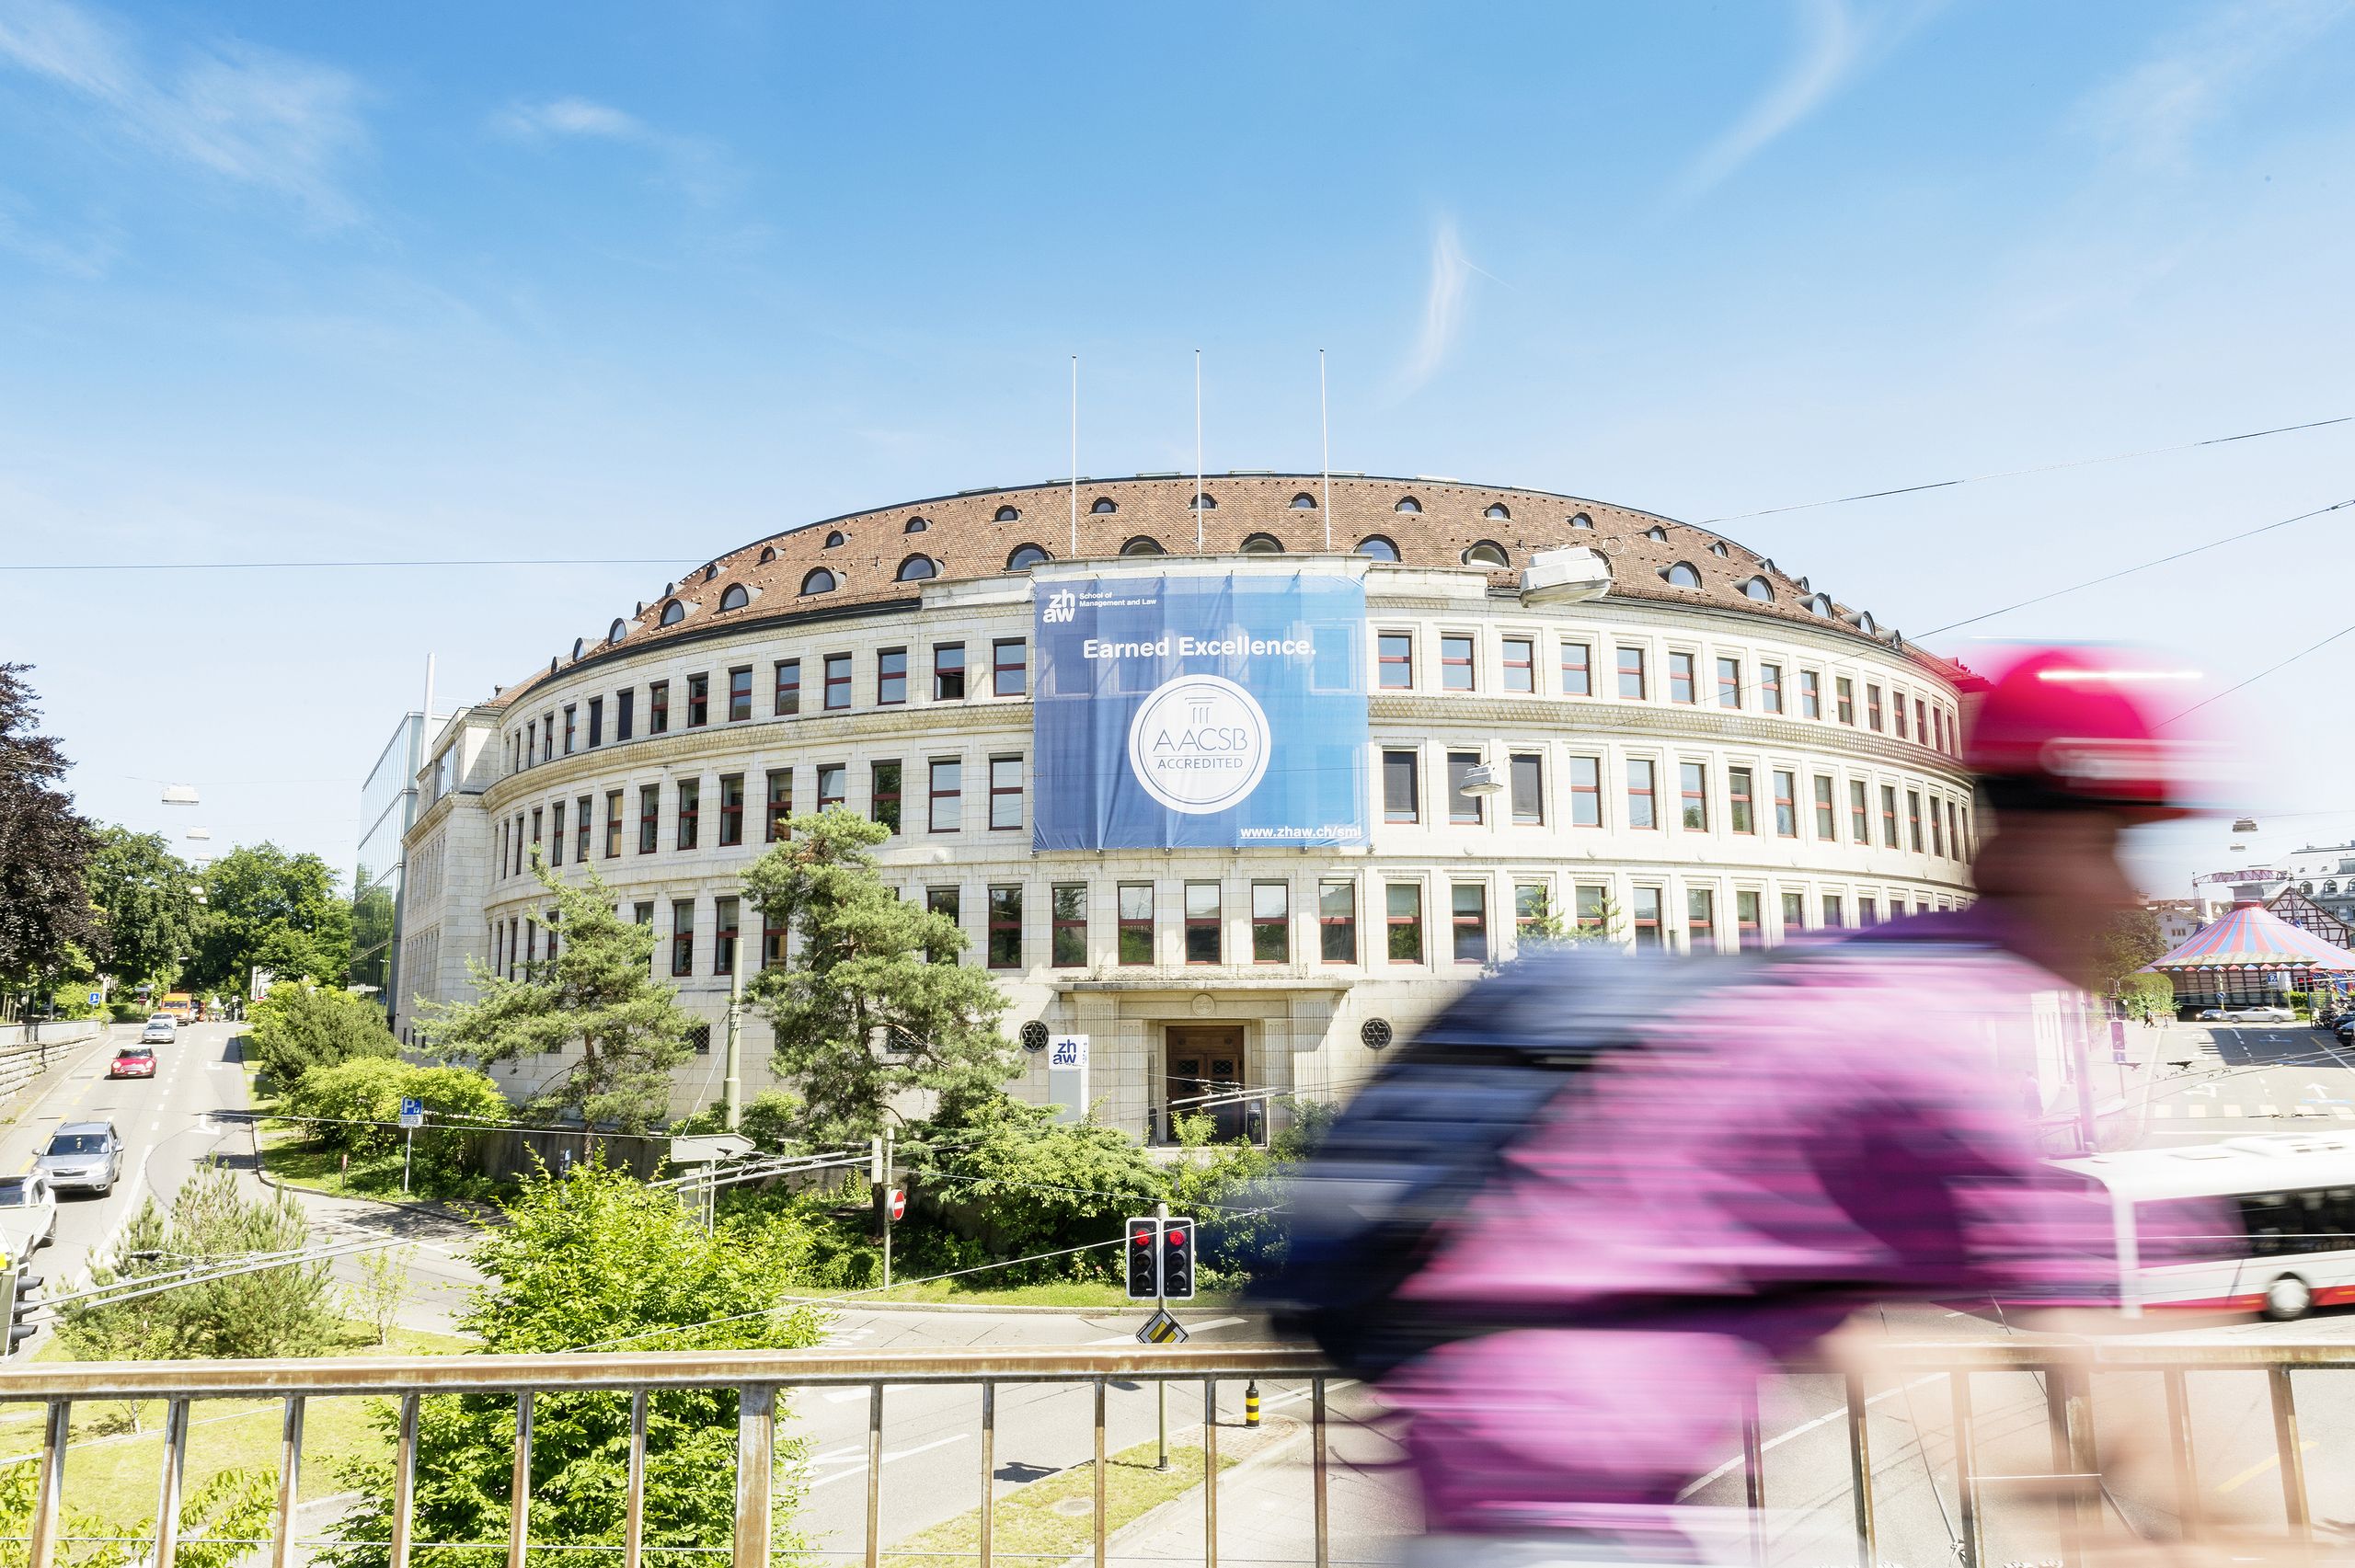 Volkart-Gebäude in Winterthur am Campus St.-Georgen-Platz, weißes rundes Gebäude an einer Kreuzung